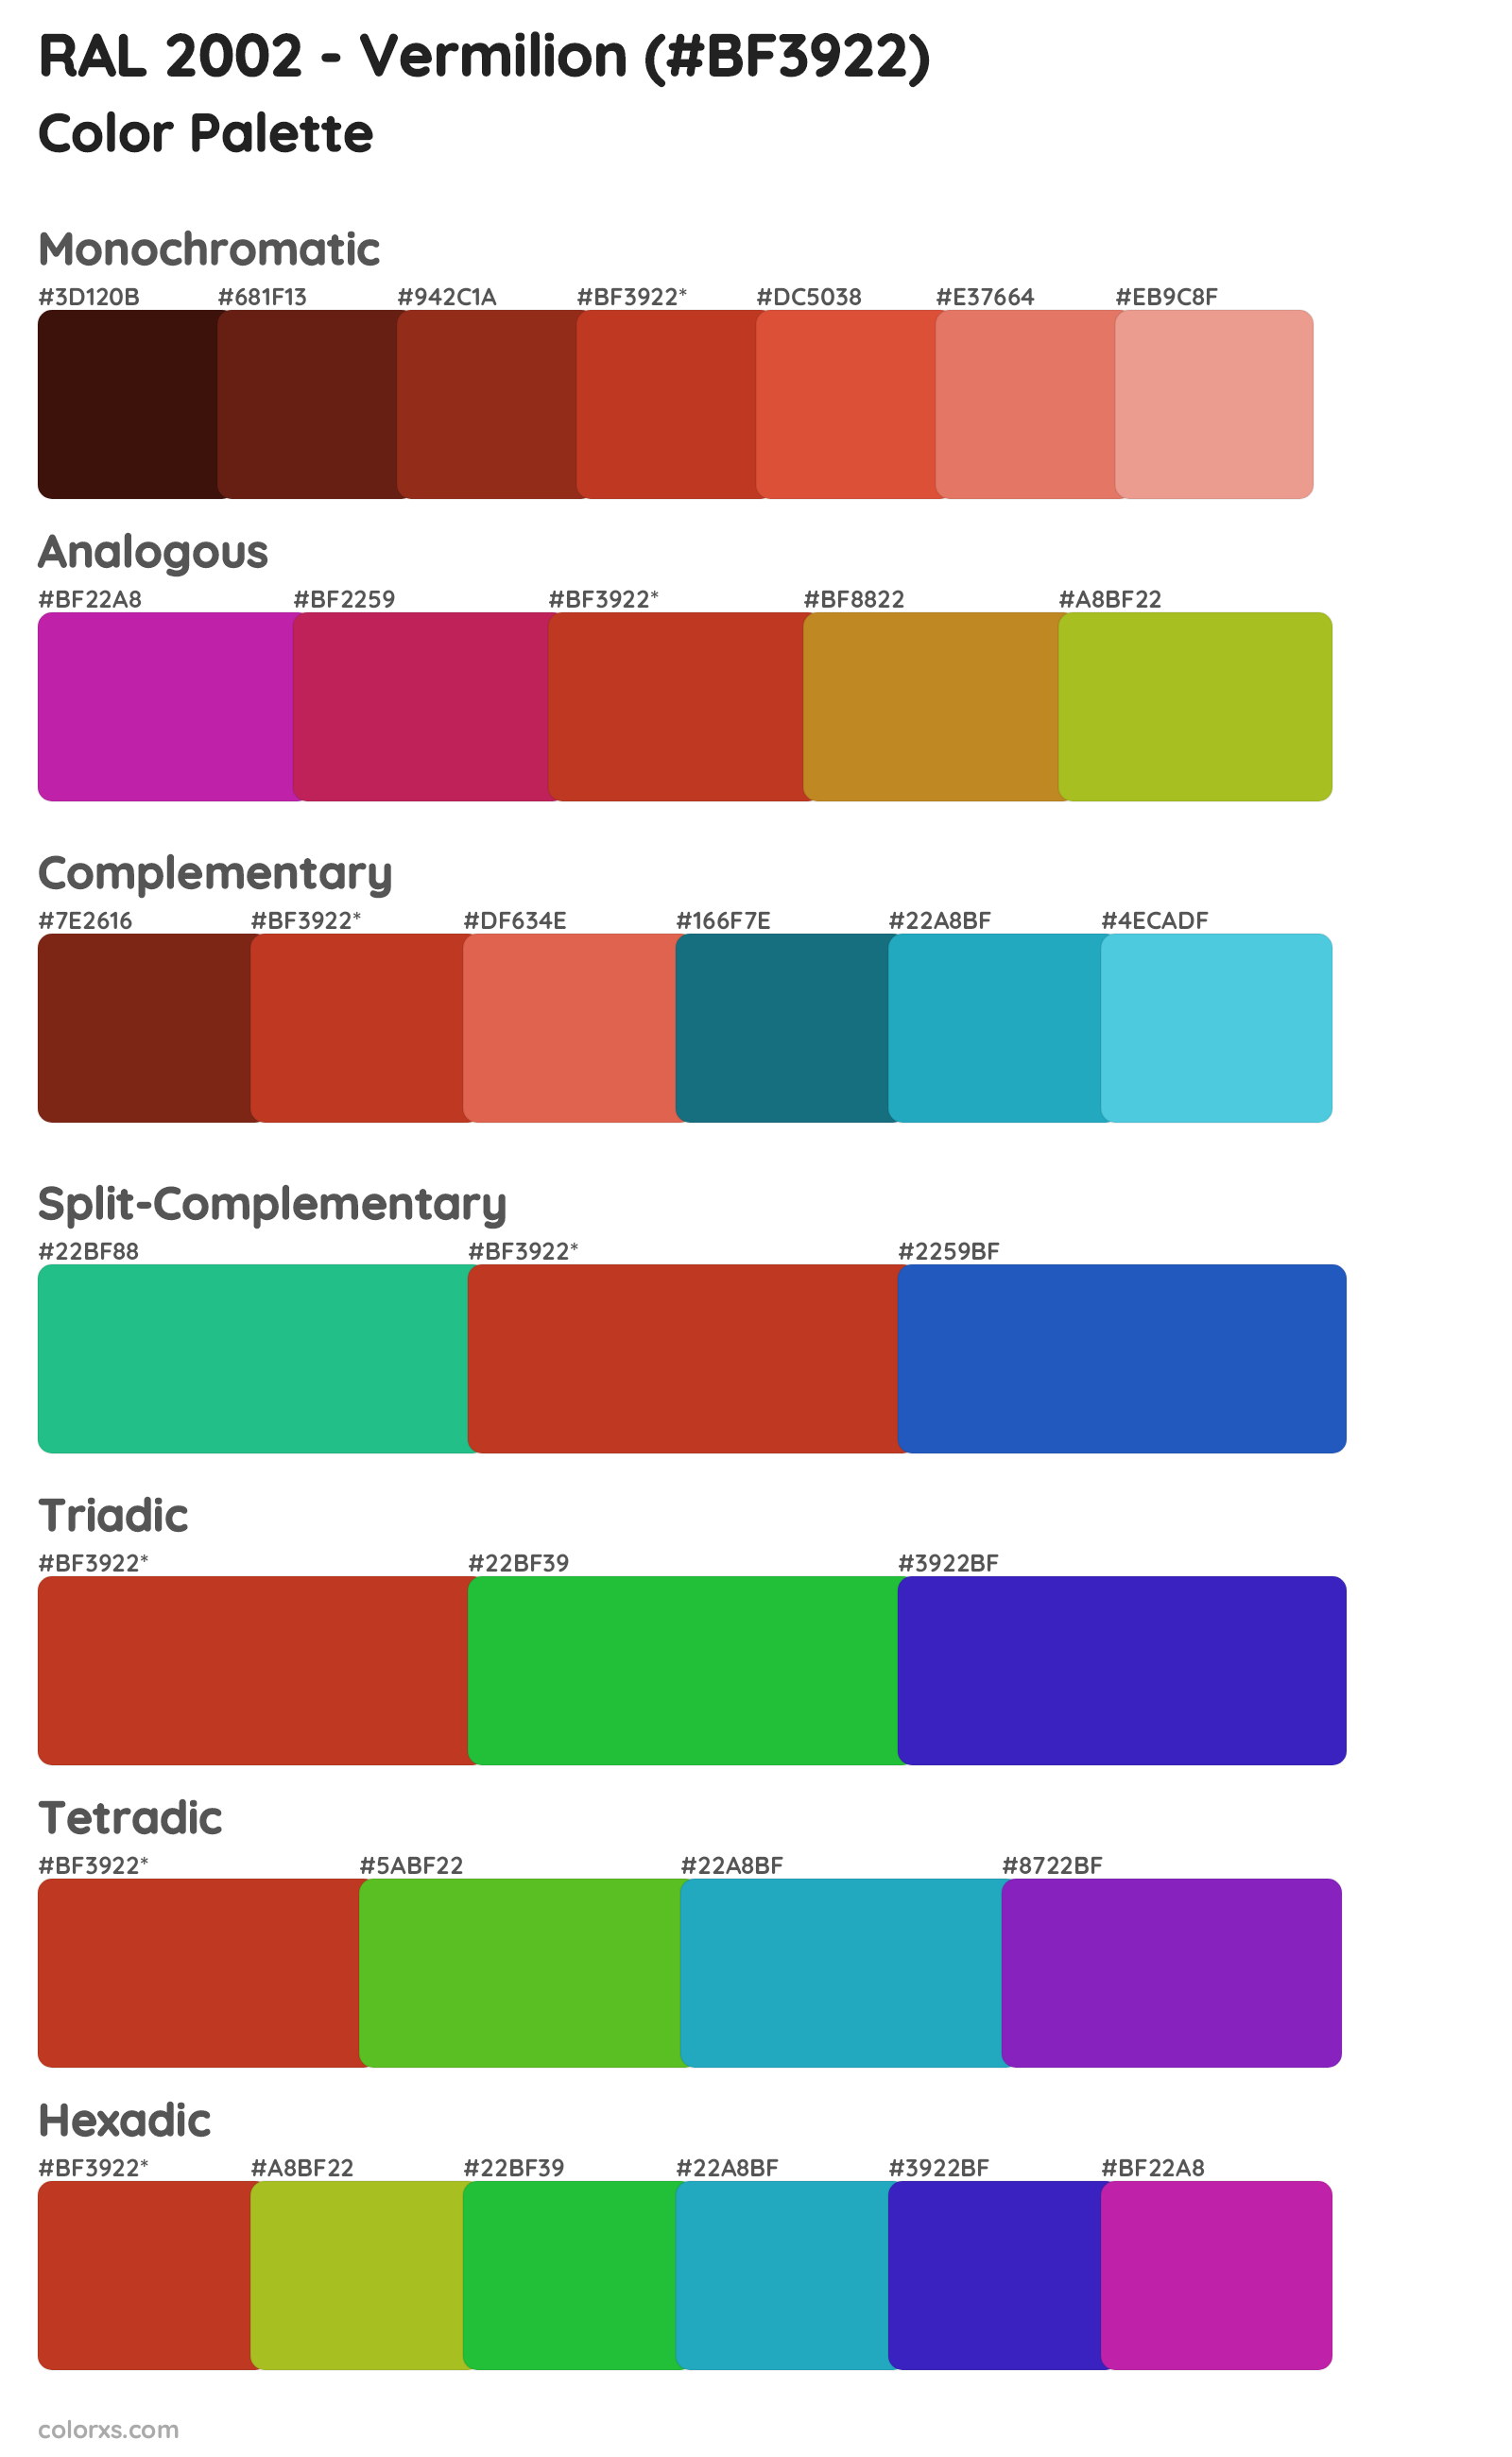 RAL 2002 - Vermilion Color Scheme Palettes